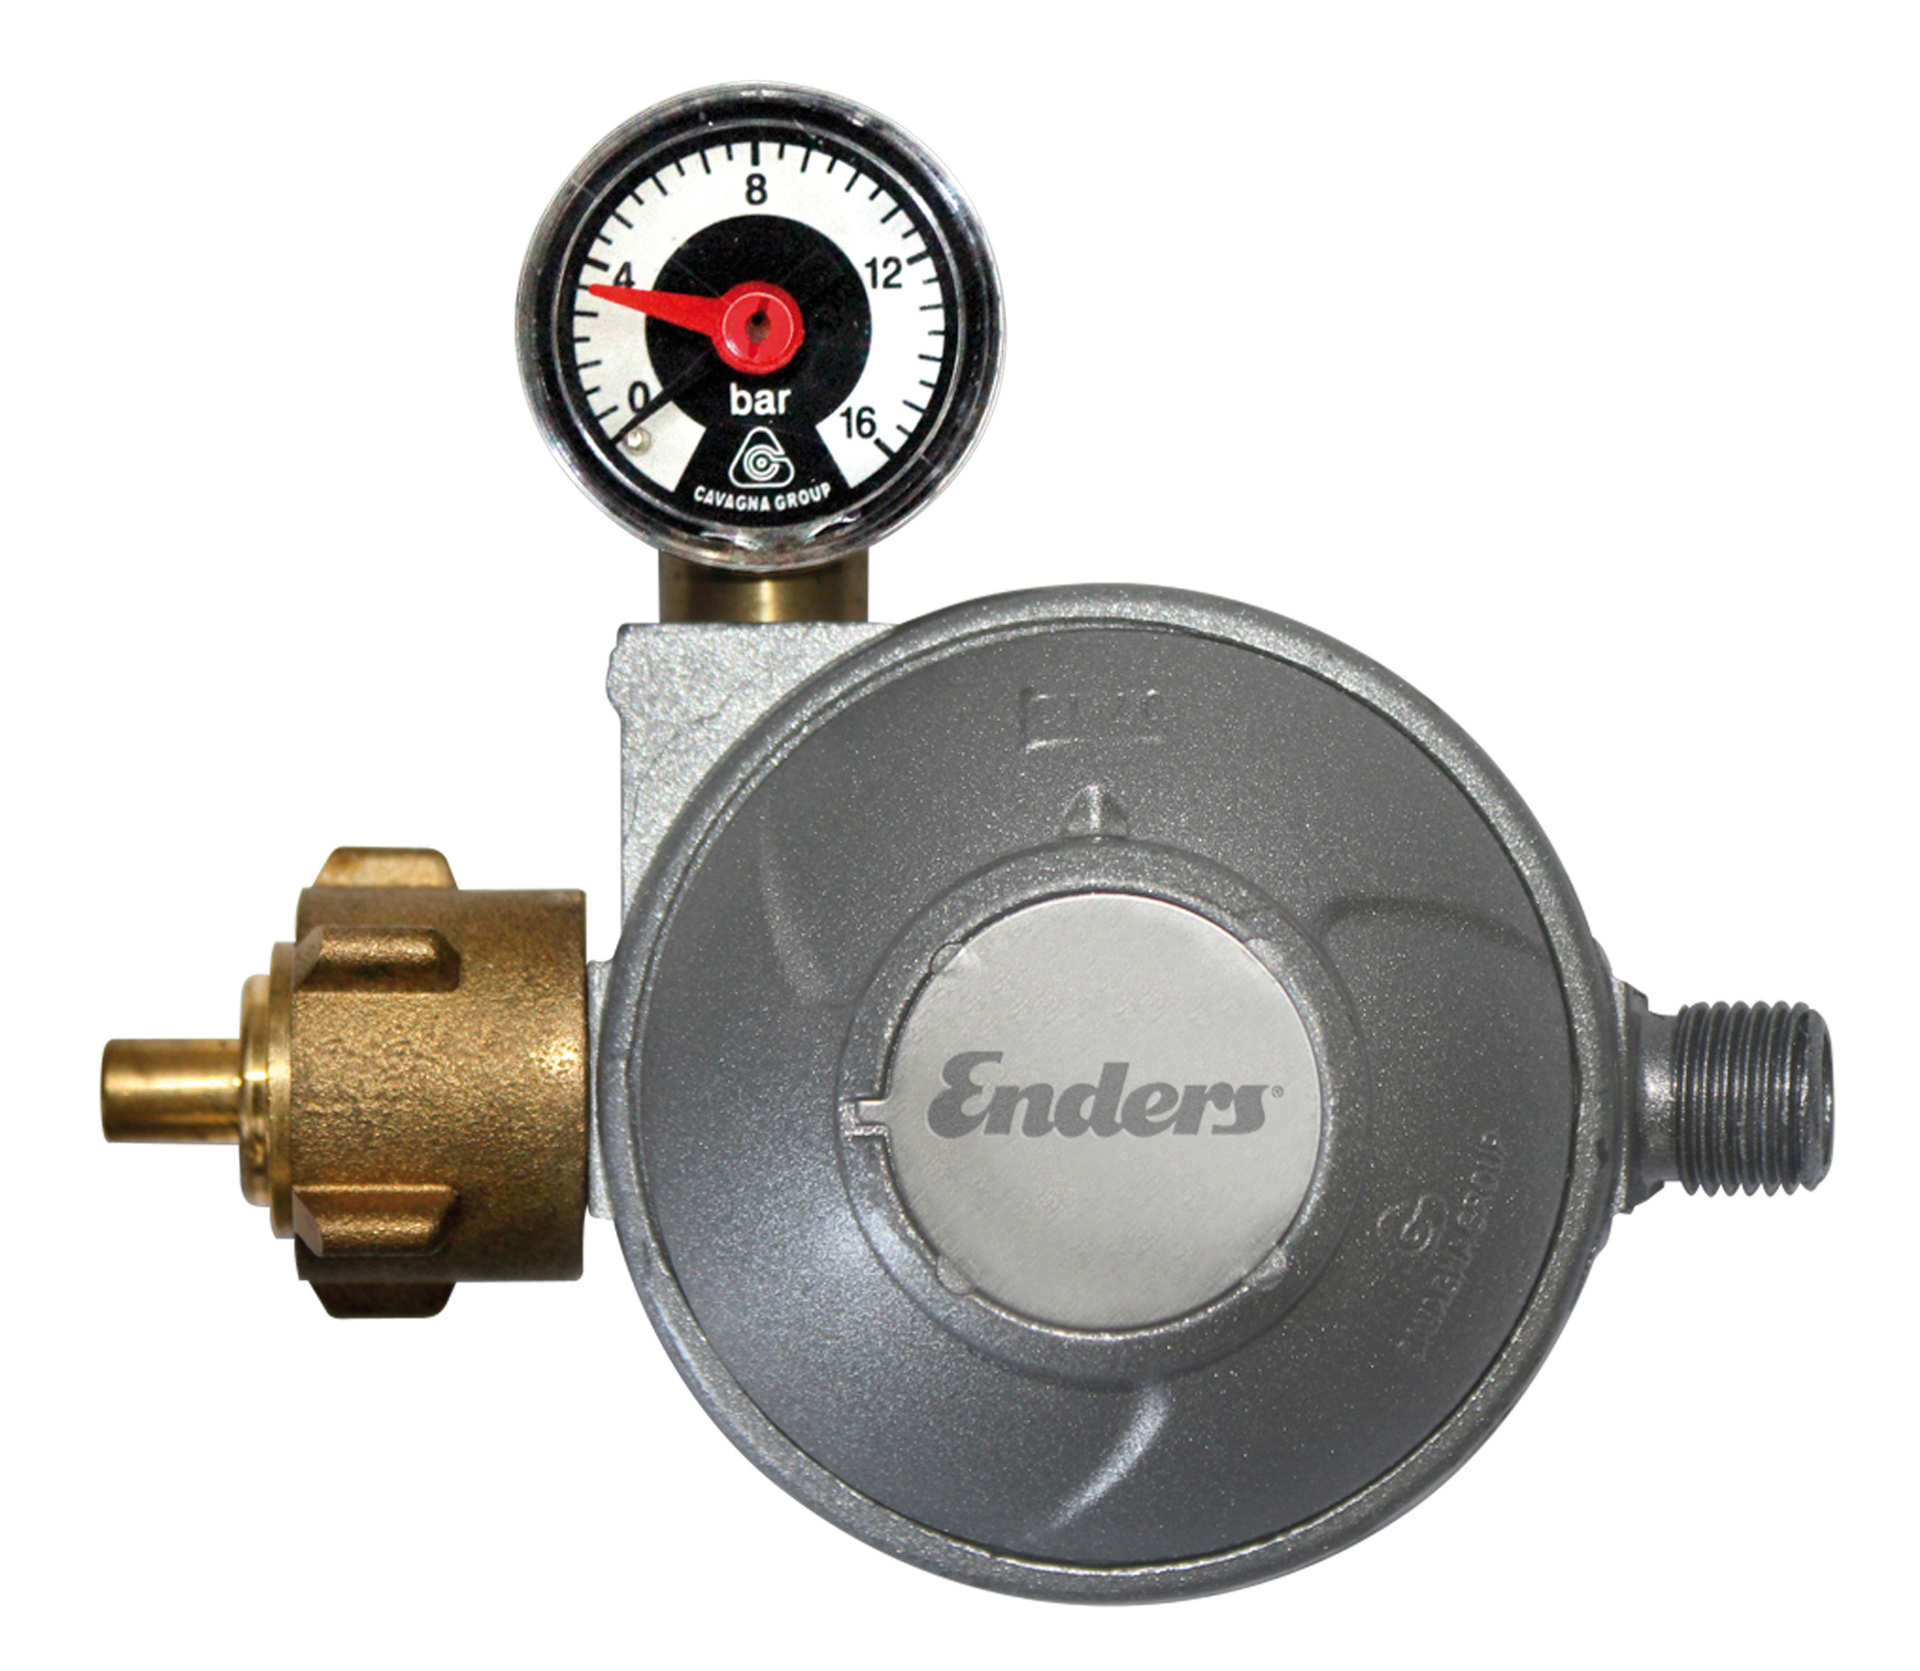 Enders Colsman Gasdruckregler mit Manometer